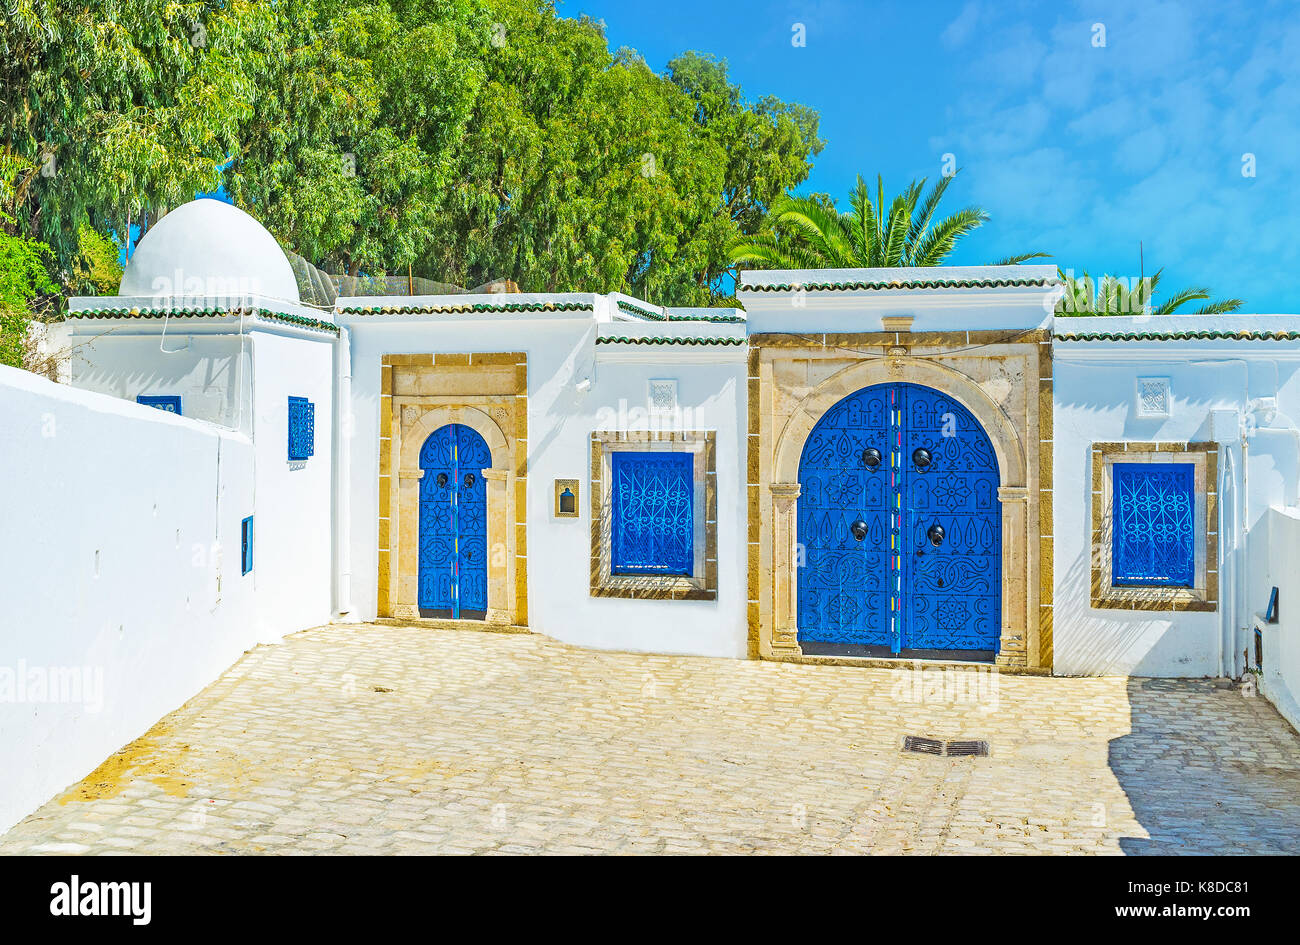 Storico palazzo arabo di Sidi Bou Said con tradizionali pareti bianche e luminose porte blu, decorata con motivi islamica, creato da rivetti, tun Foto Stock